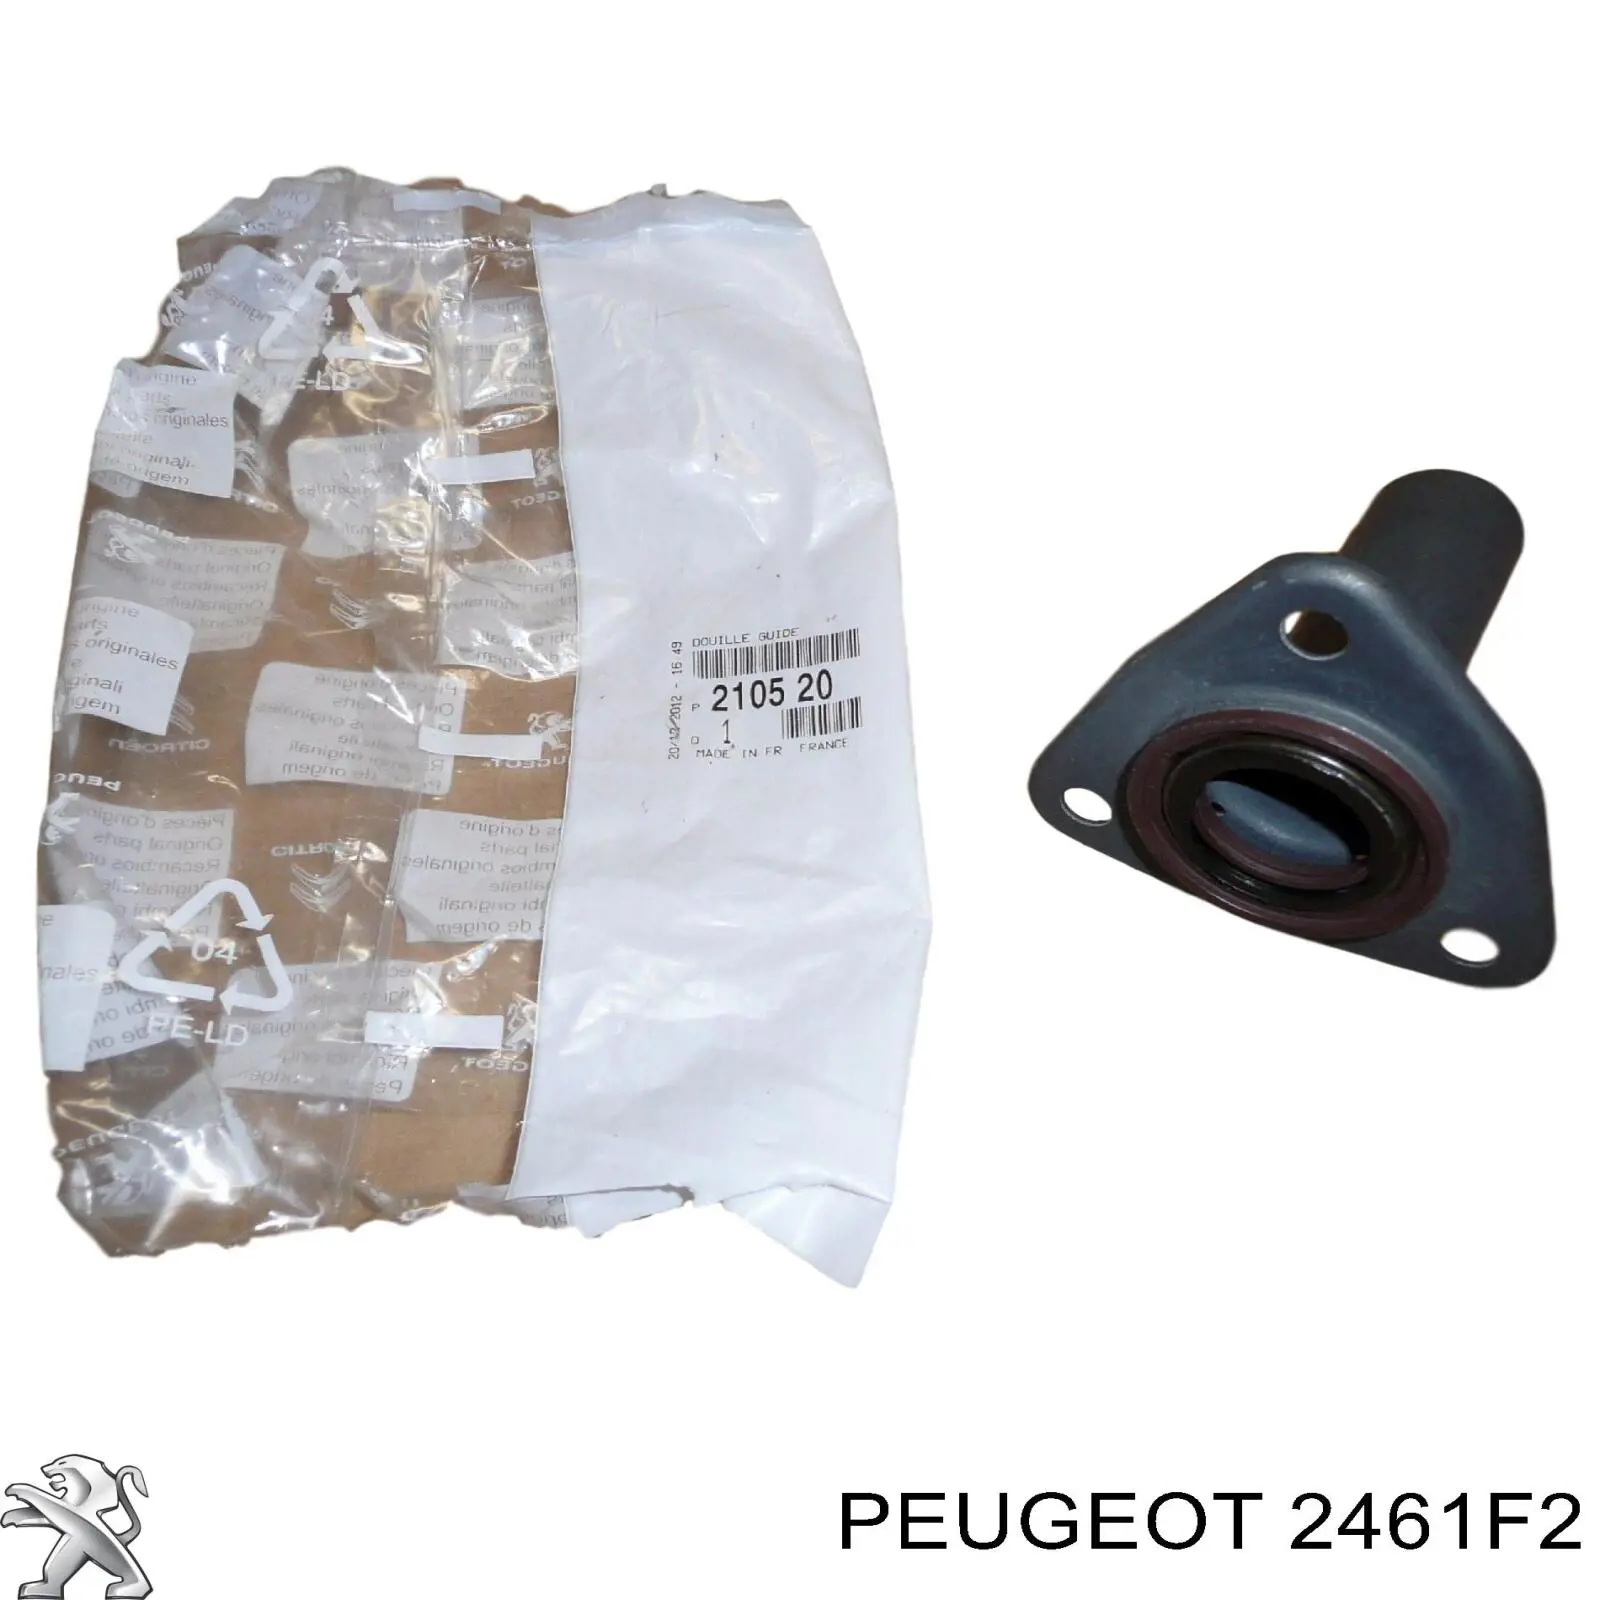 2461F2 Peugeot/Citroen depósito de caja de cambios hidraulica